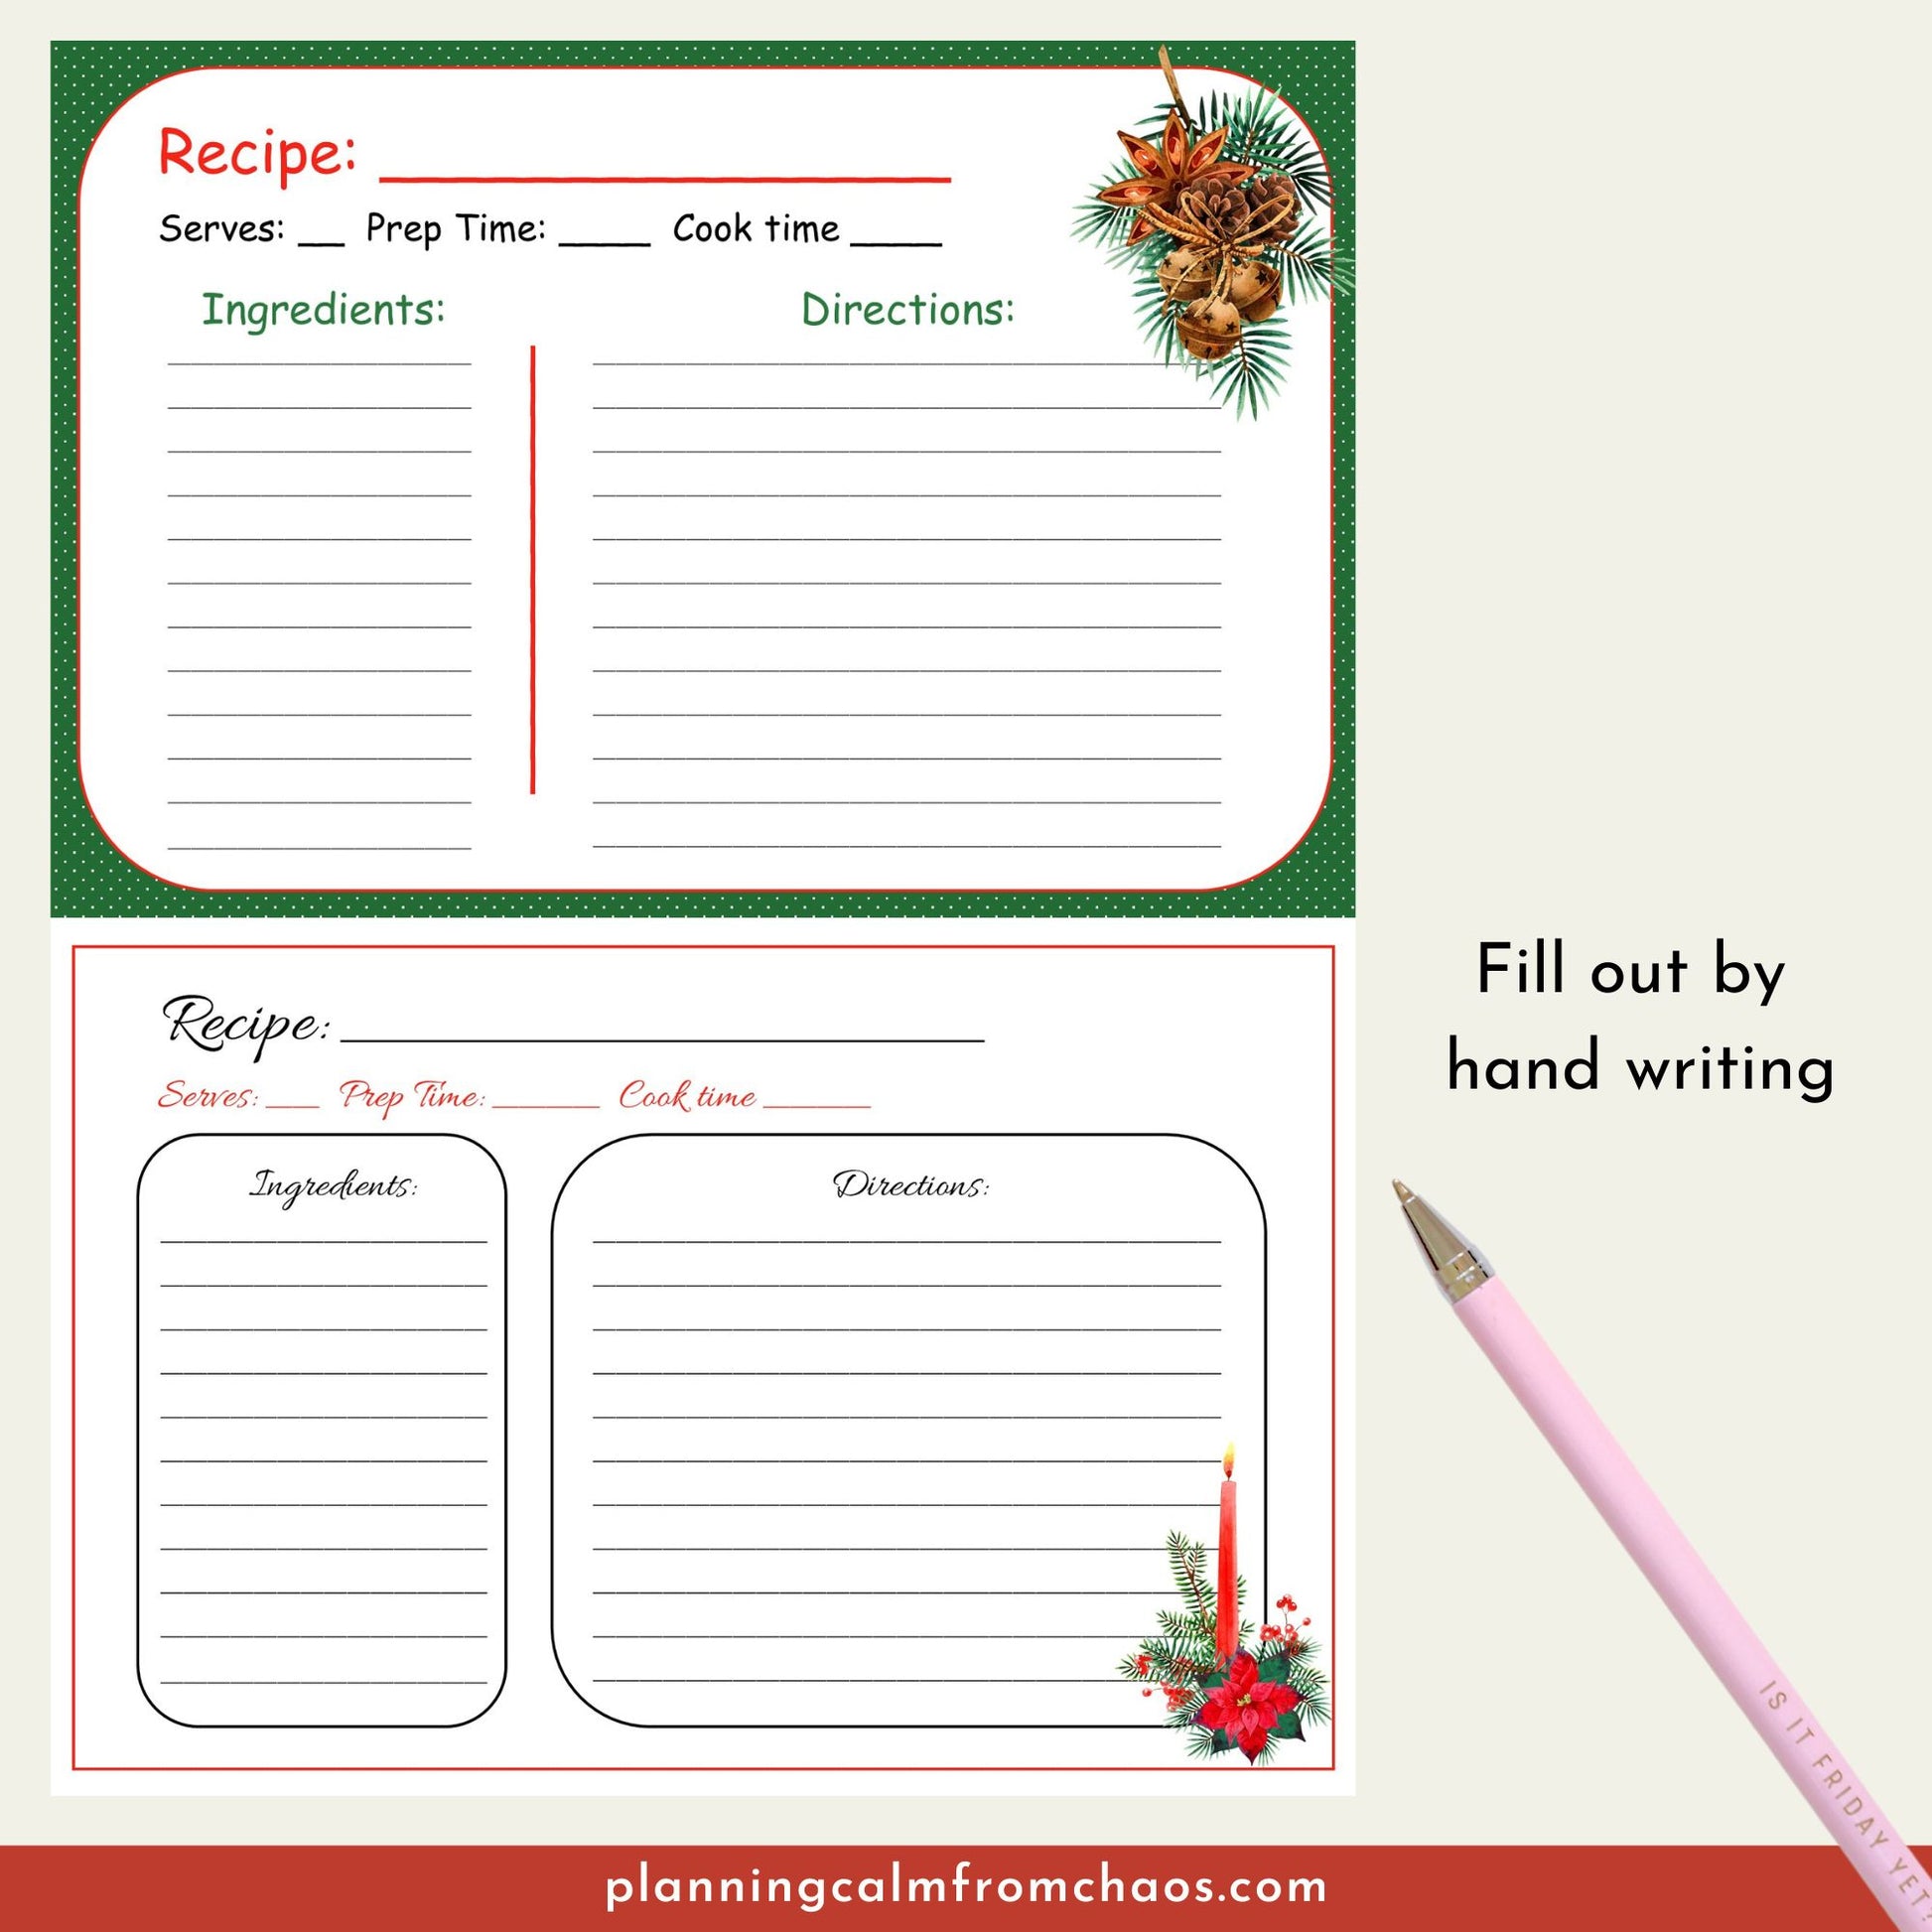 christmas recipe card printable pdf